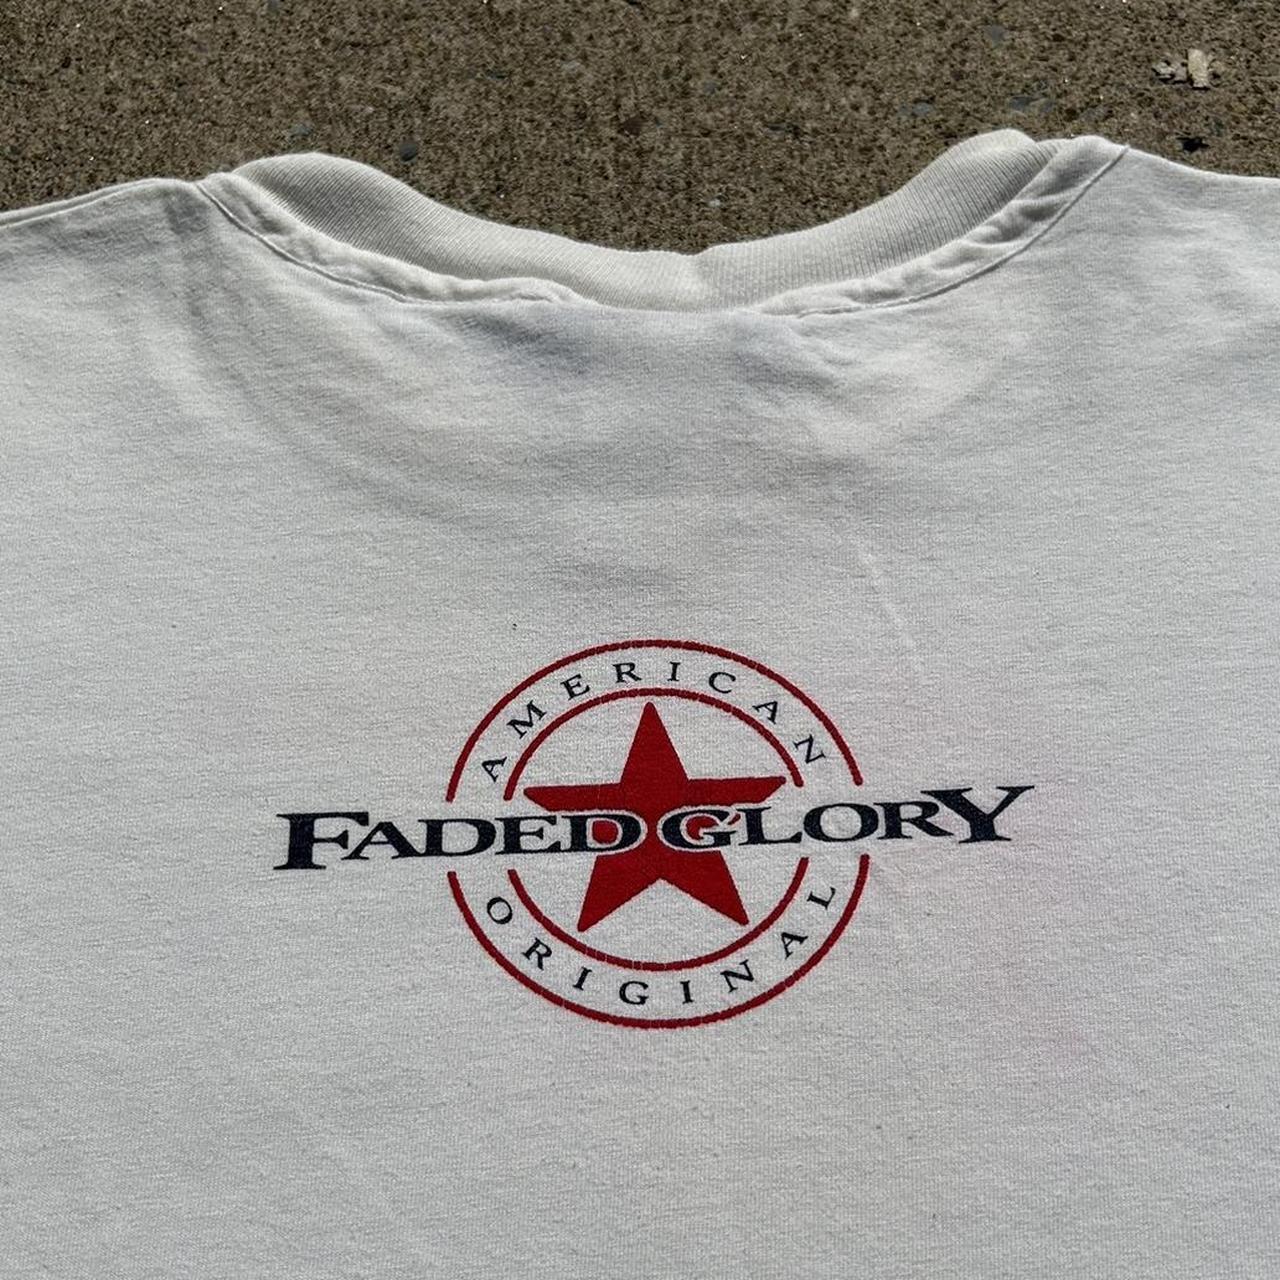 Faded Glory - Dukatt Custom Shirts